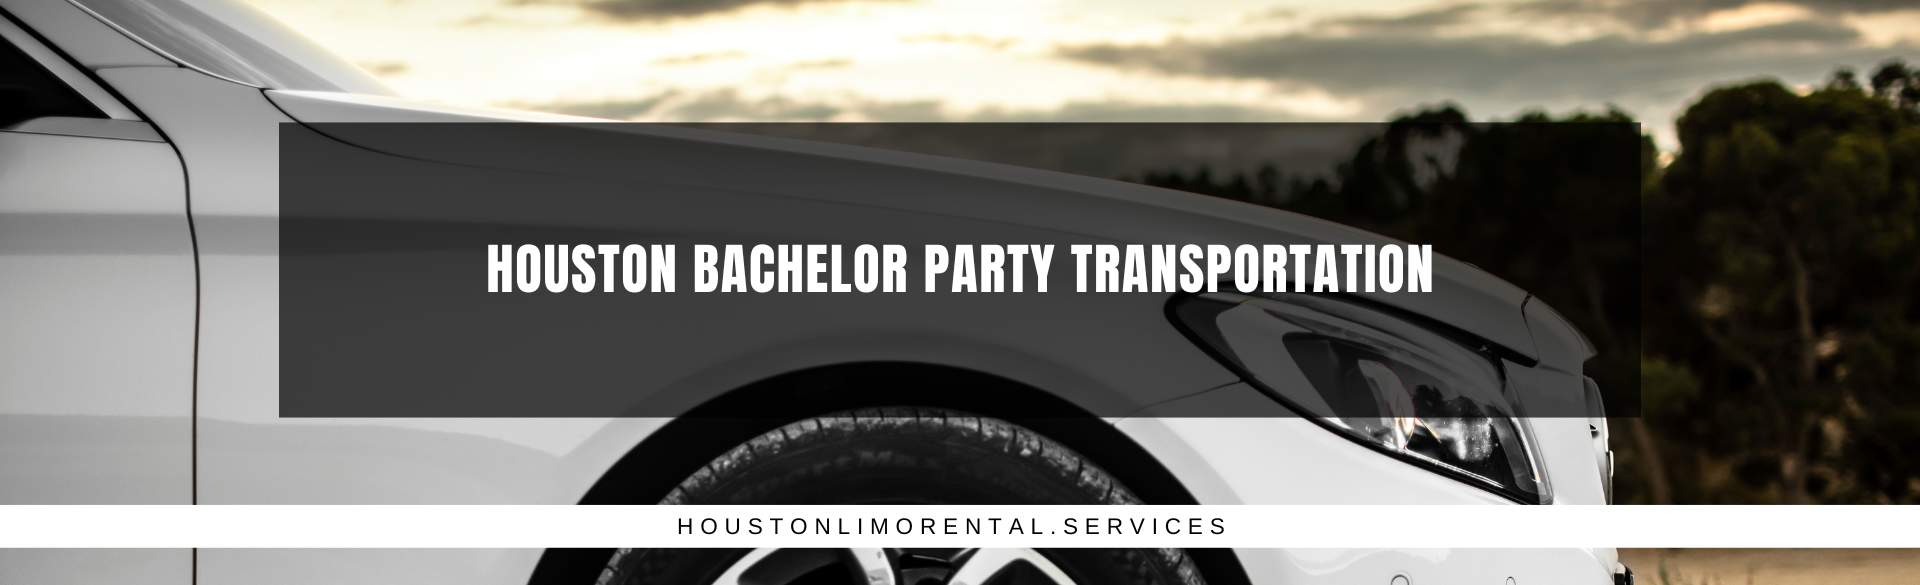 Houston Bachelor Party Transportation